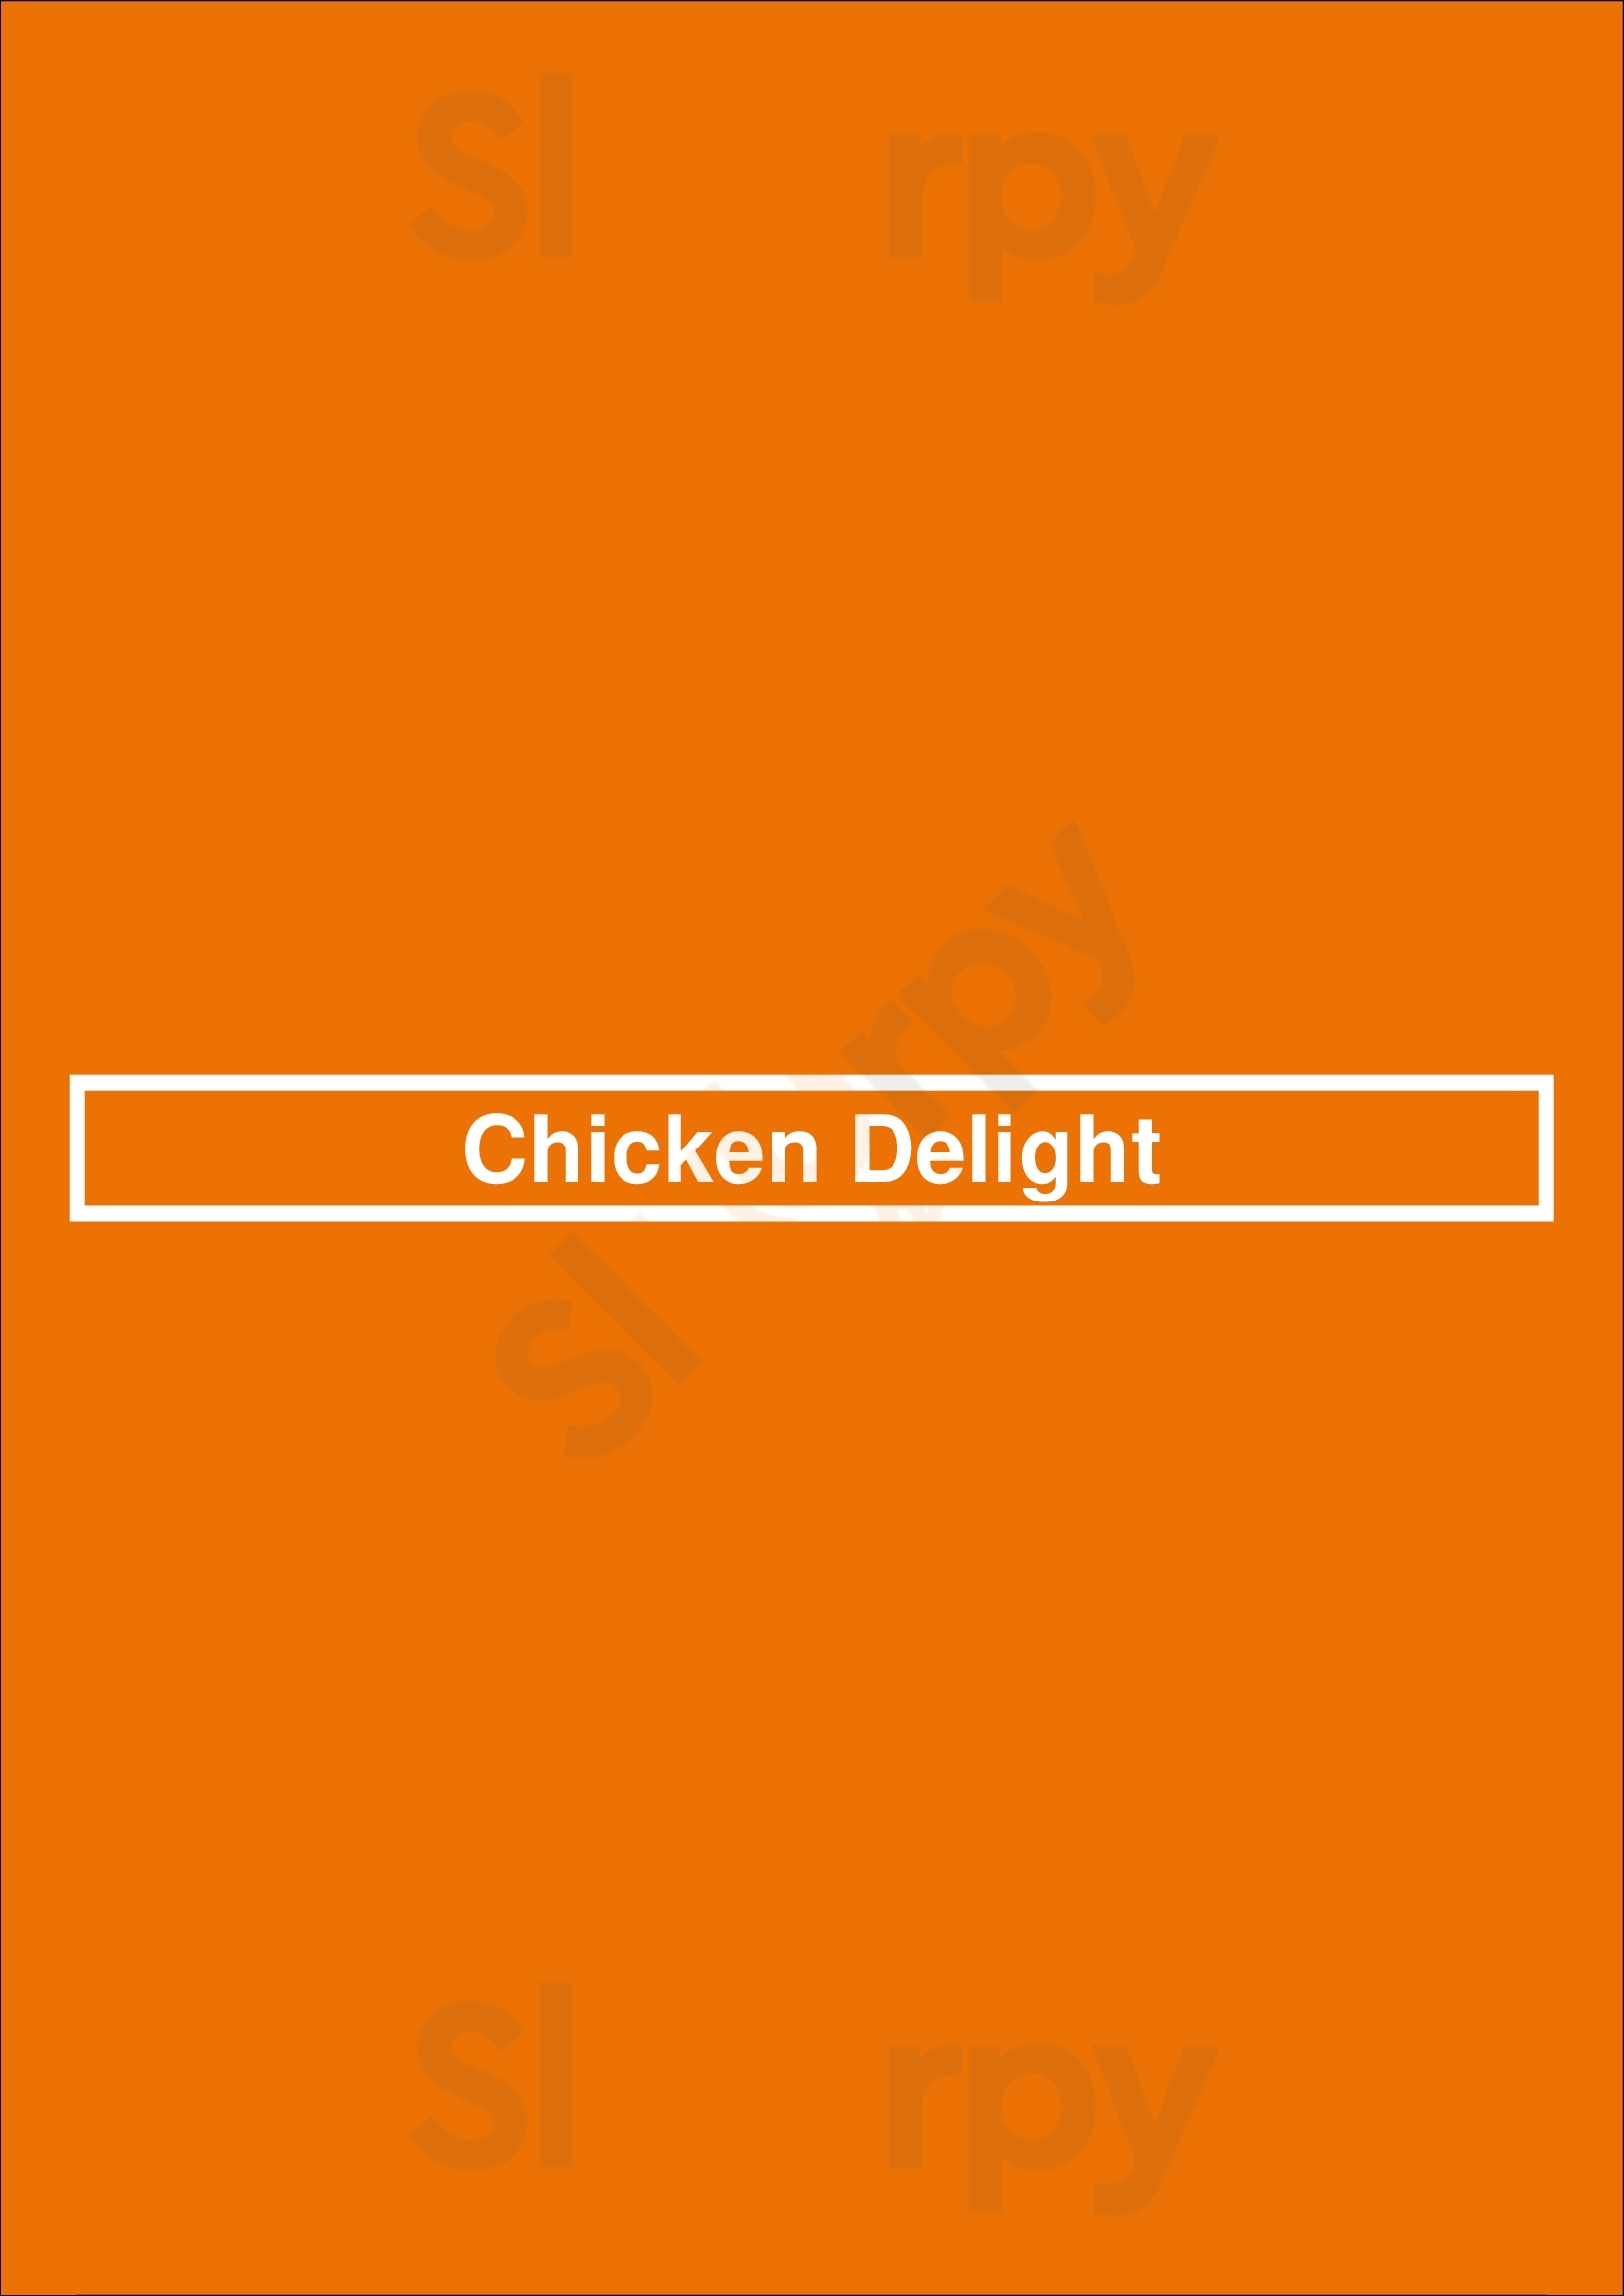 Chicken Delight Winnipeg Menu - 1